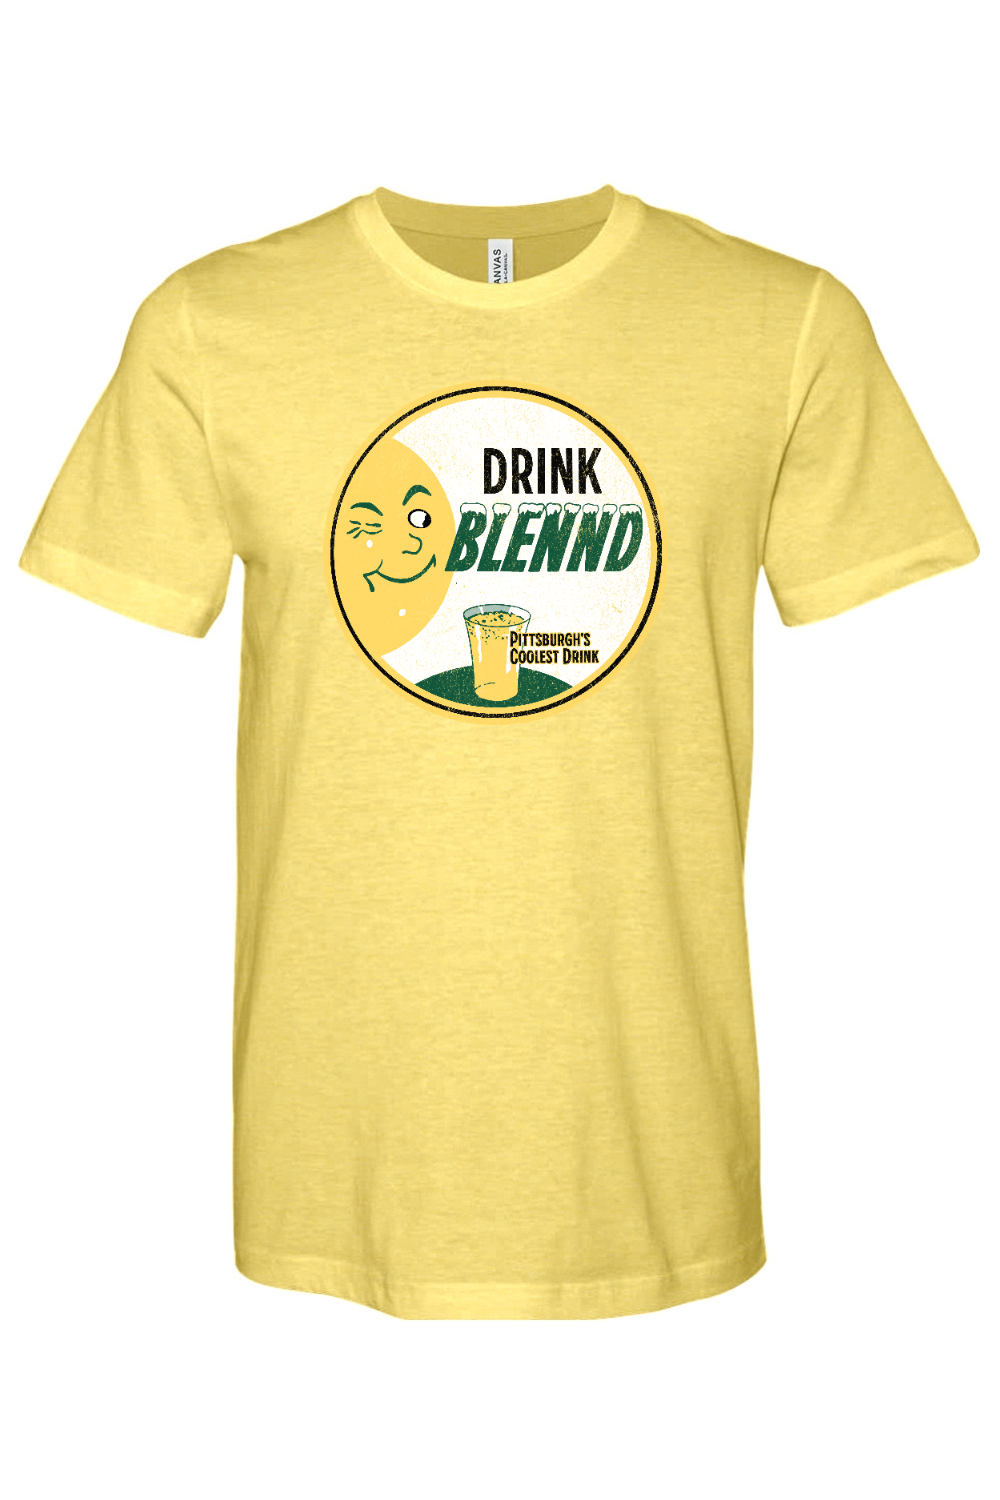 Drink Blennd - Yinzylvania